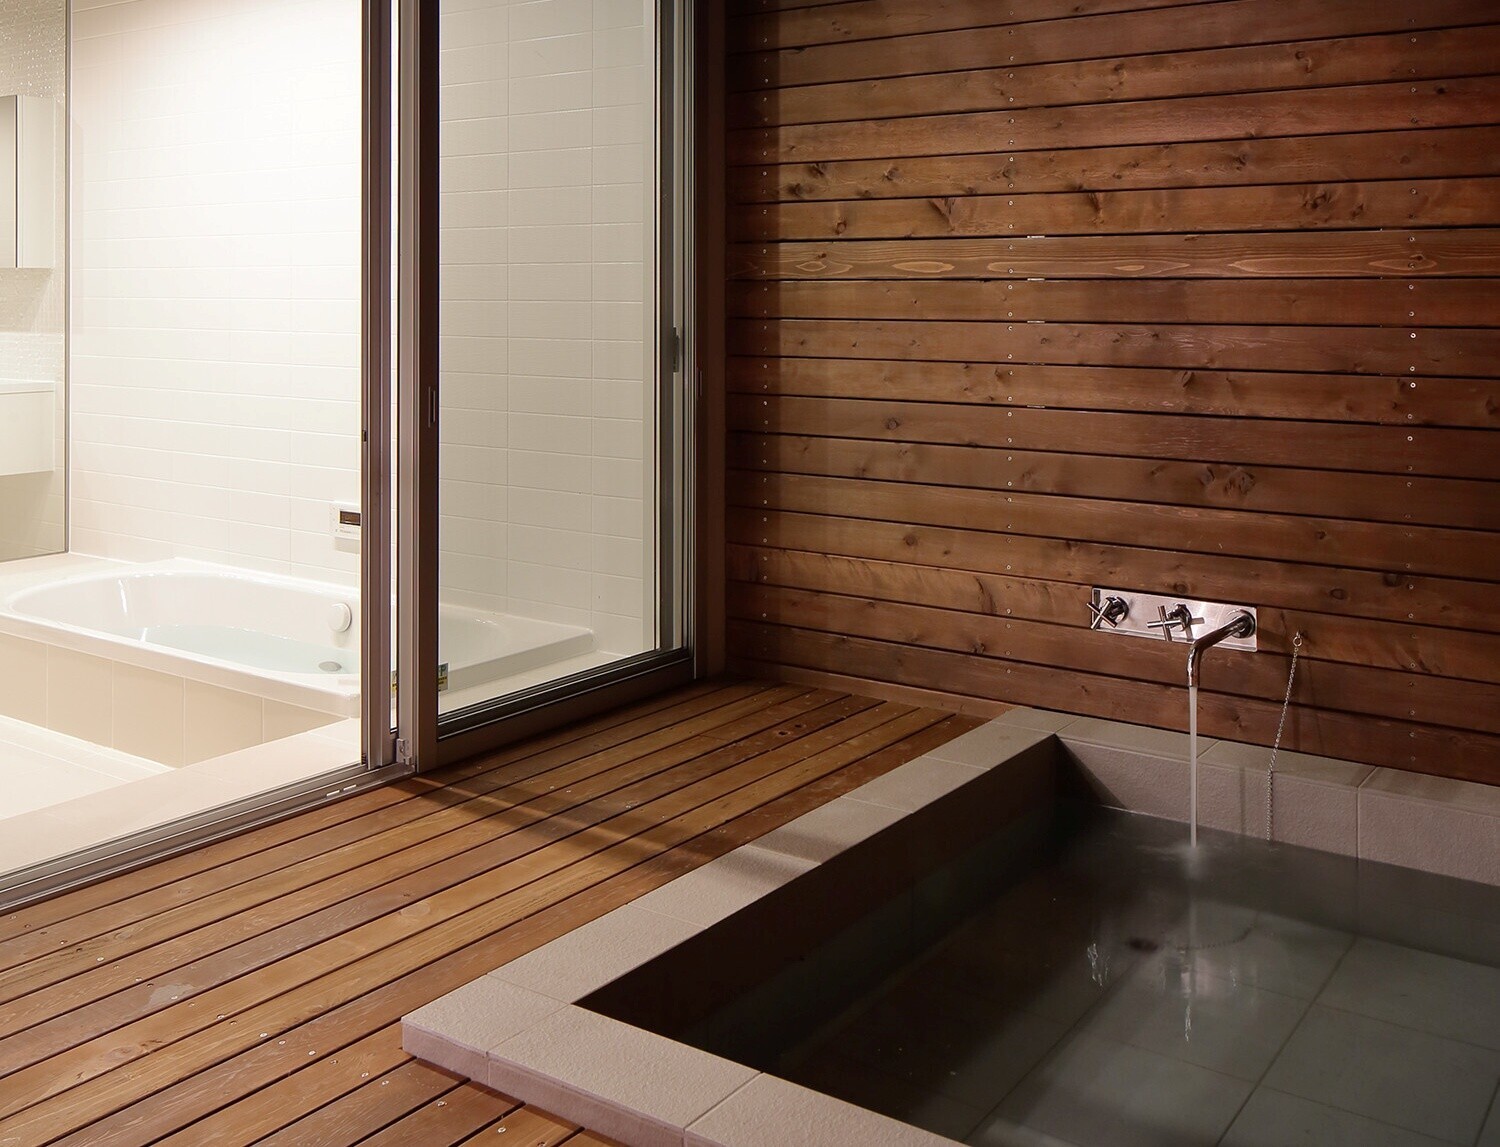 自宅で温泉気分 露天風呂がある住まいの建築事例3選 スミカマガジン Sumika 建築家 工務店との家づくりを無料でサポート